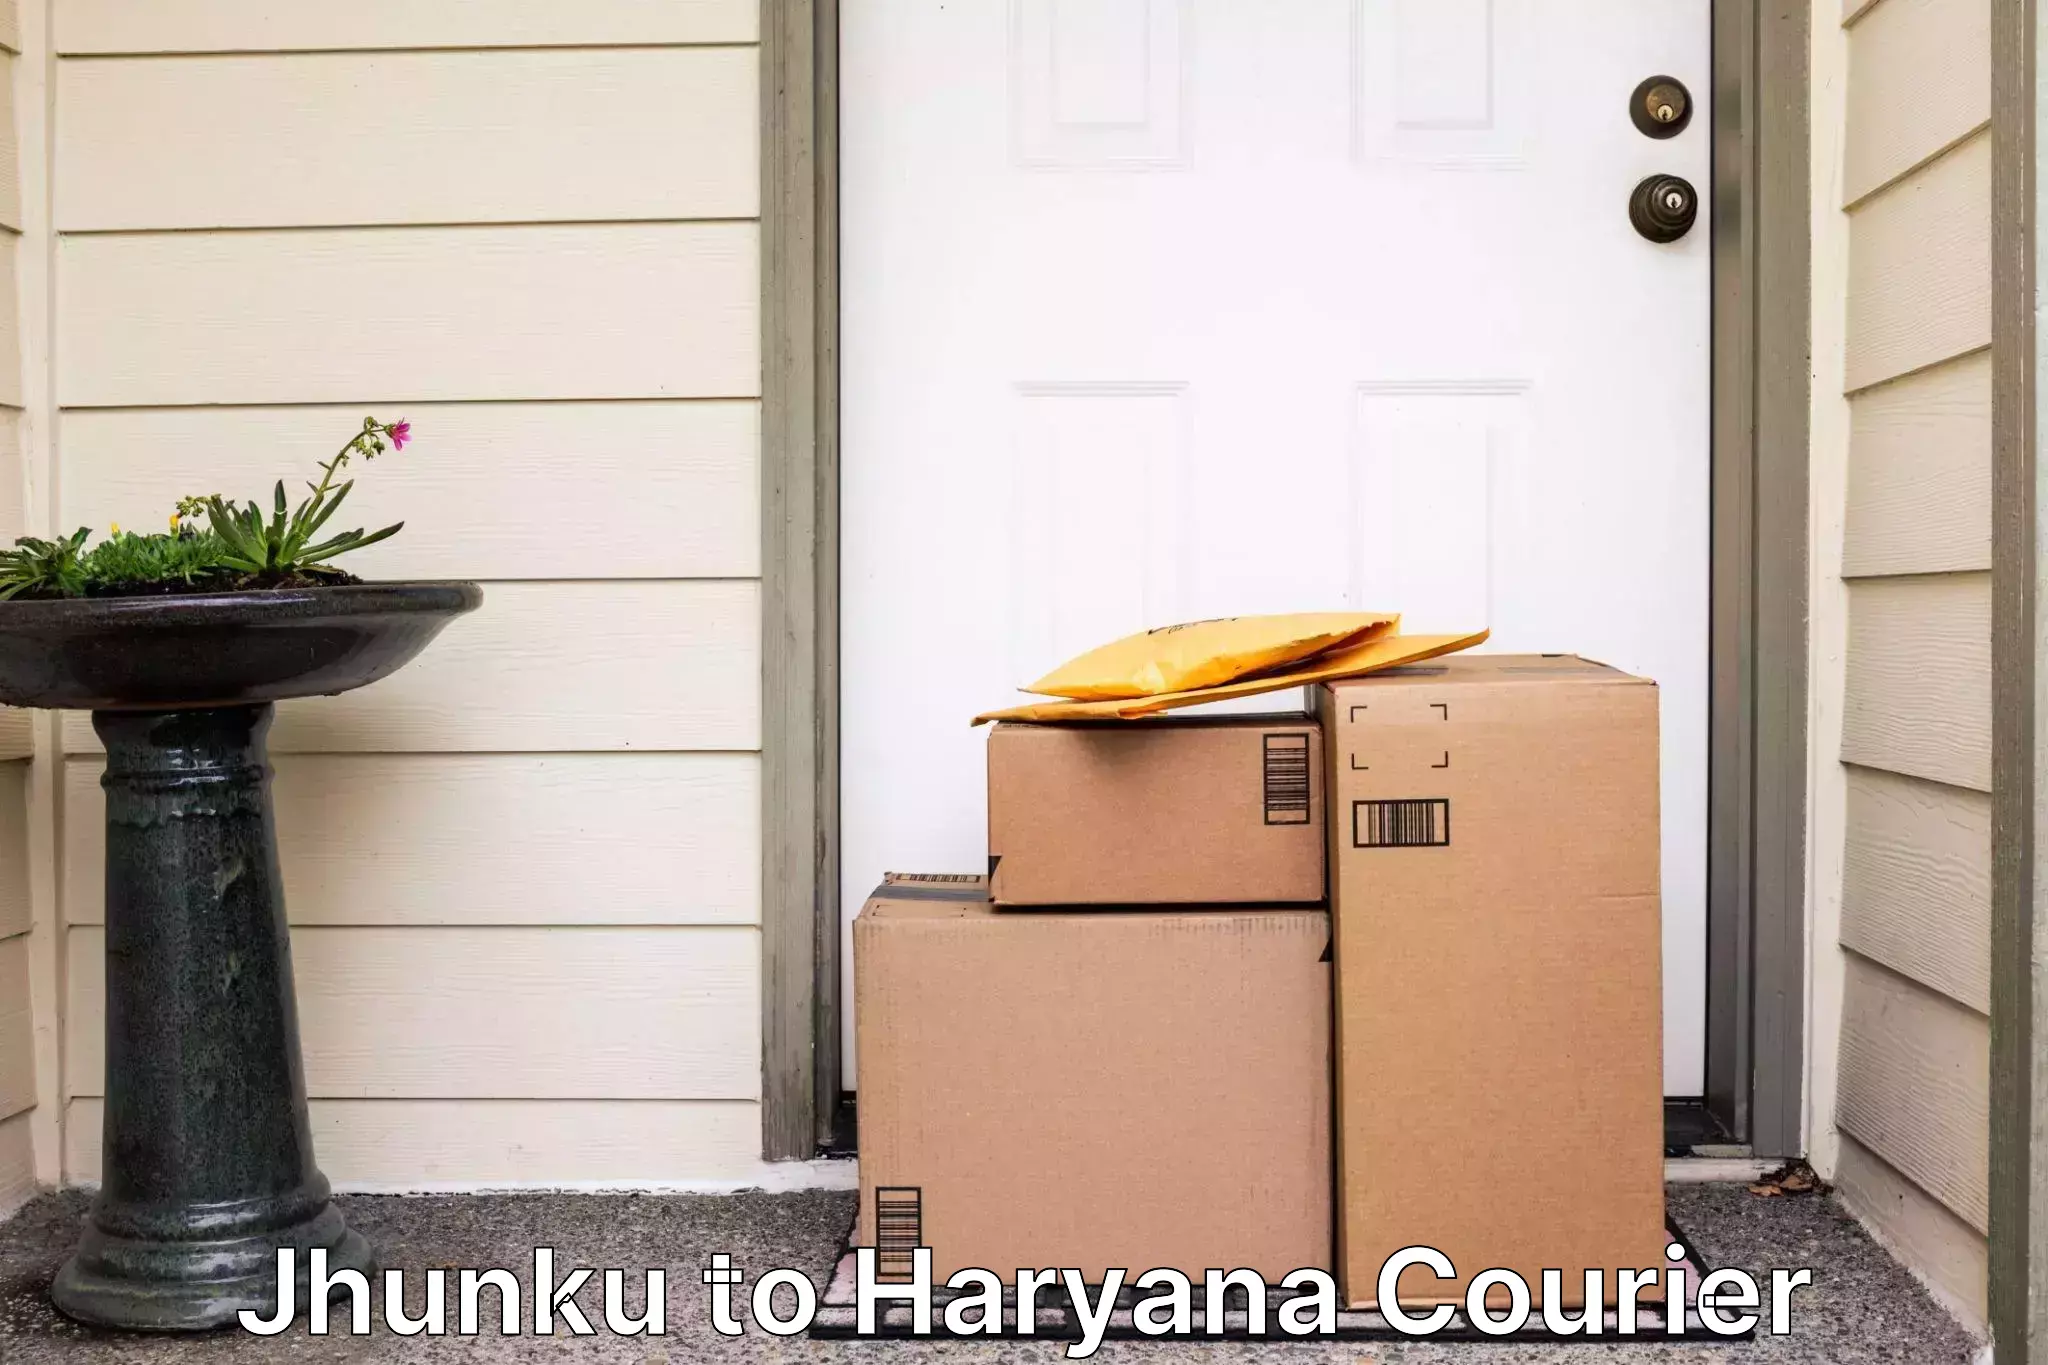 24-hour courier service Jhunku to Haryana